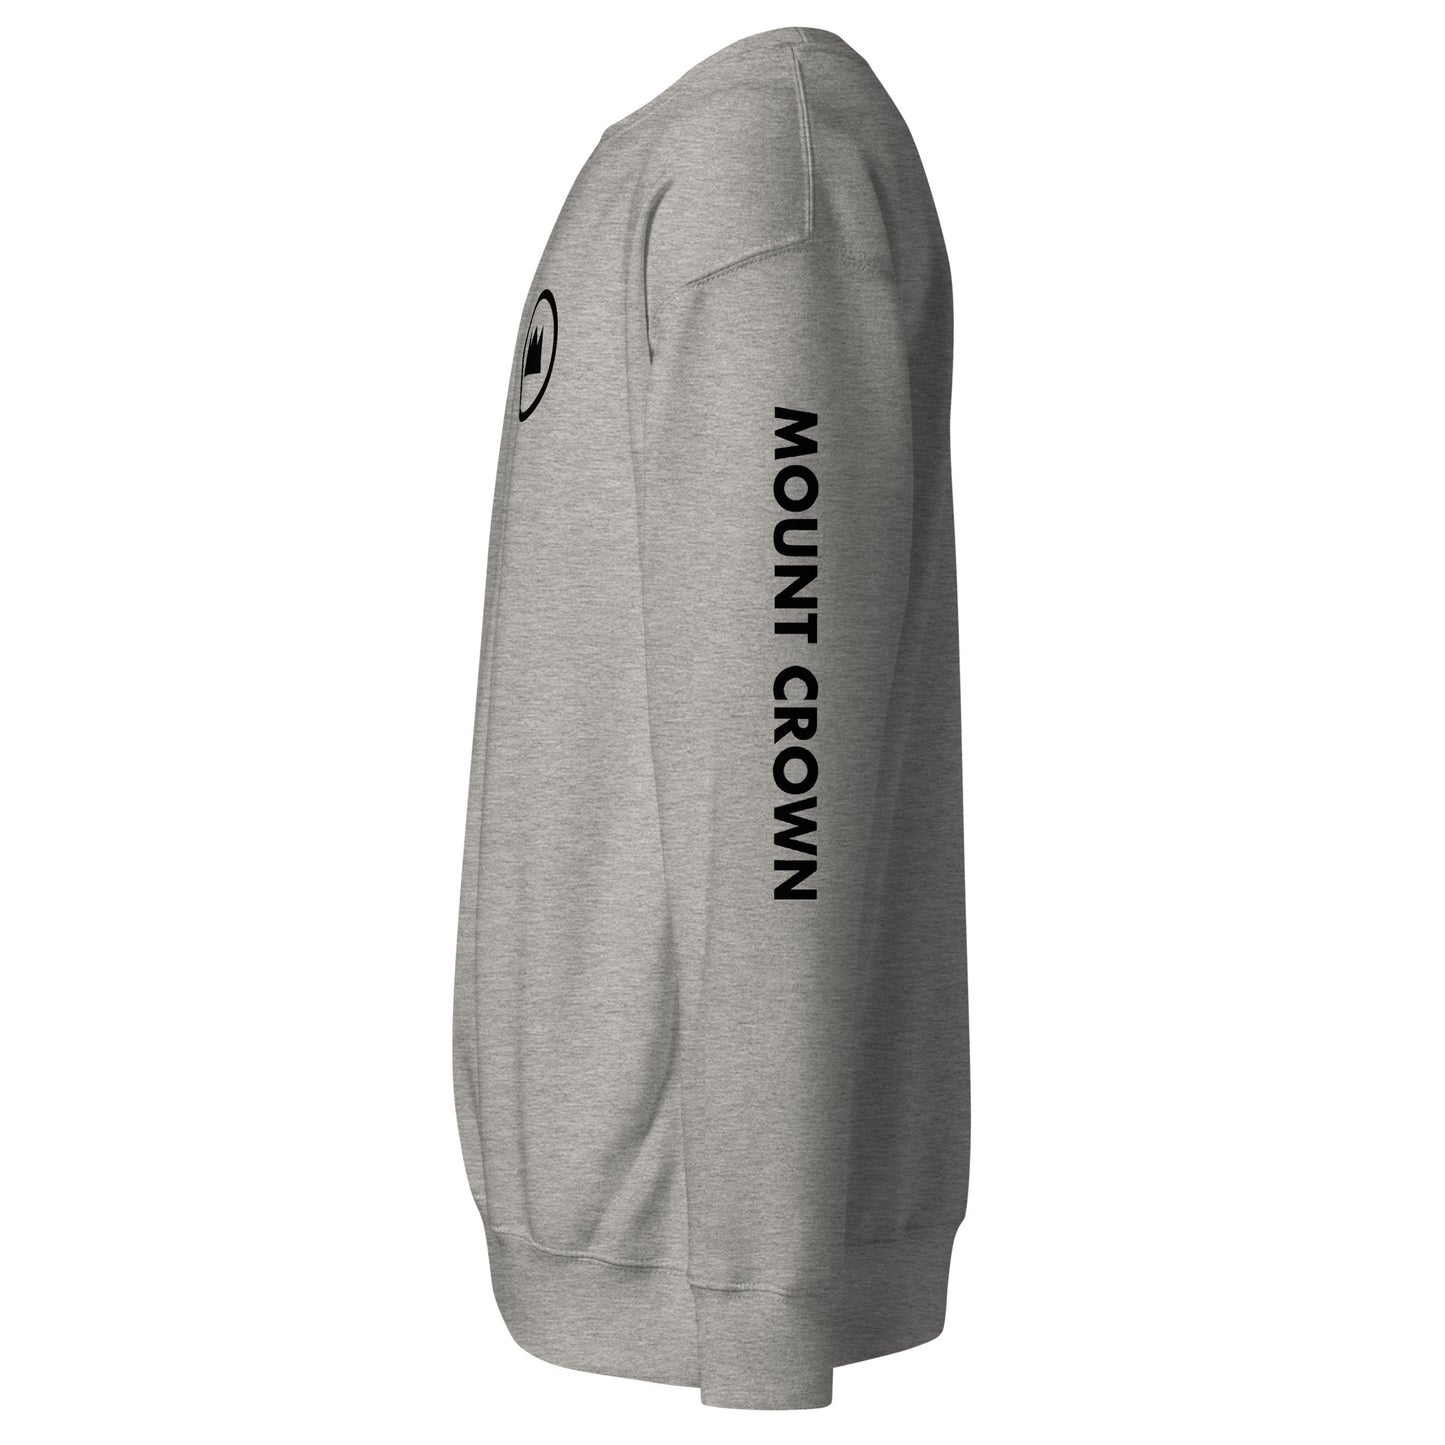 MOUNT CROWN Little Halo (Blk) Unisex Premium Sweatshirt